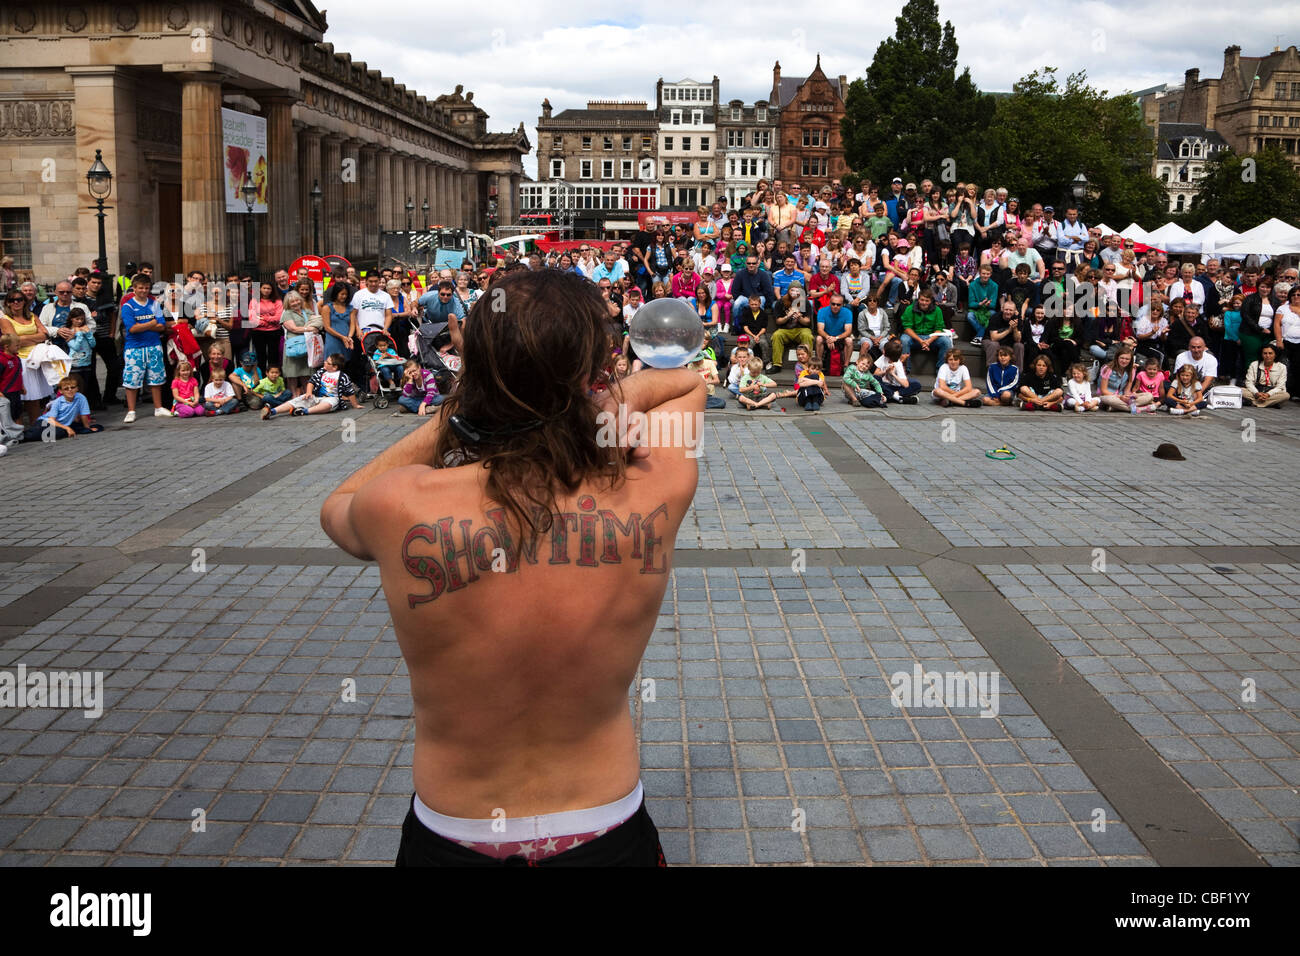 Straße Entertainer auf der Edinburgh Fringe Festival mit einer Tätowierung auf dem Rücken "Showtime" Stockfoto